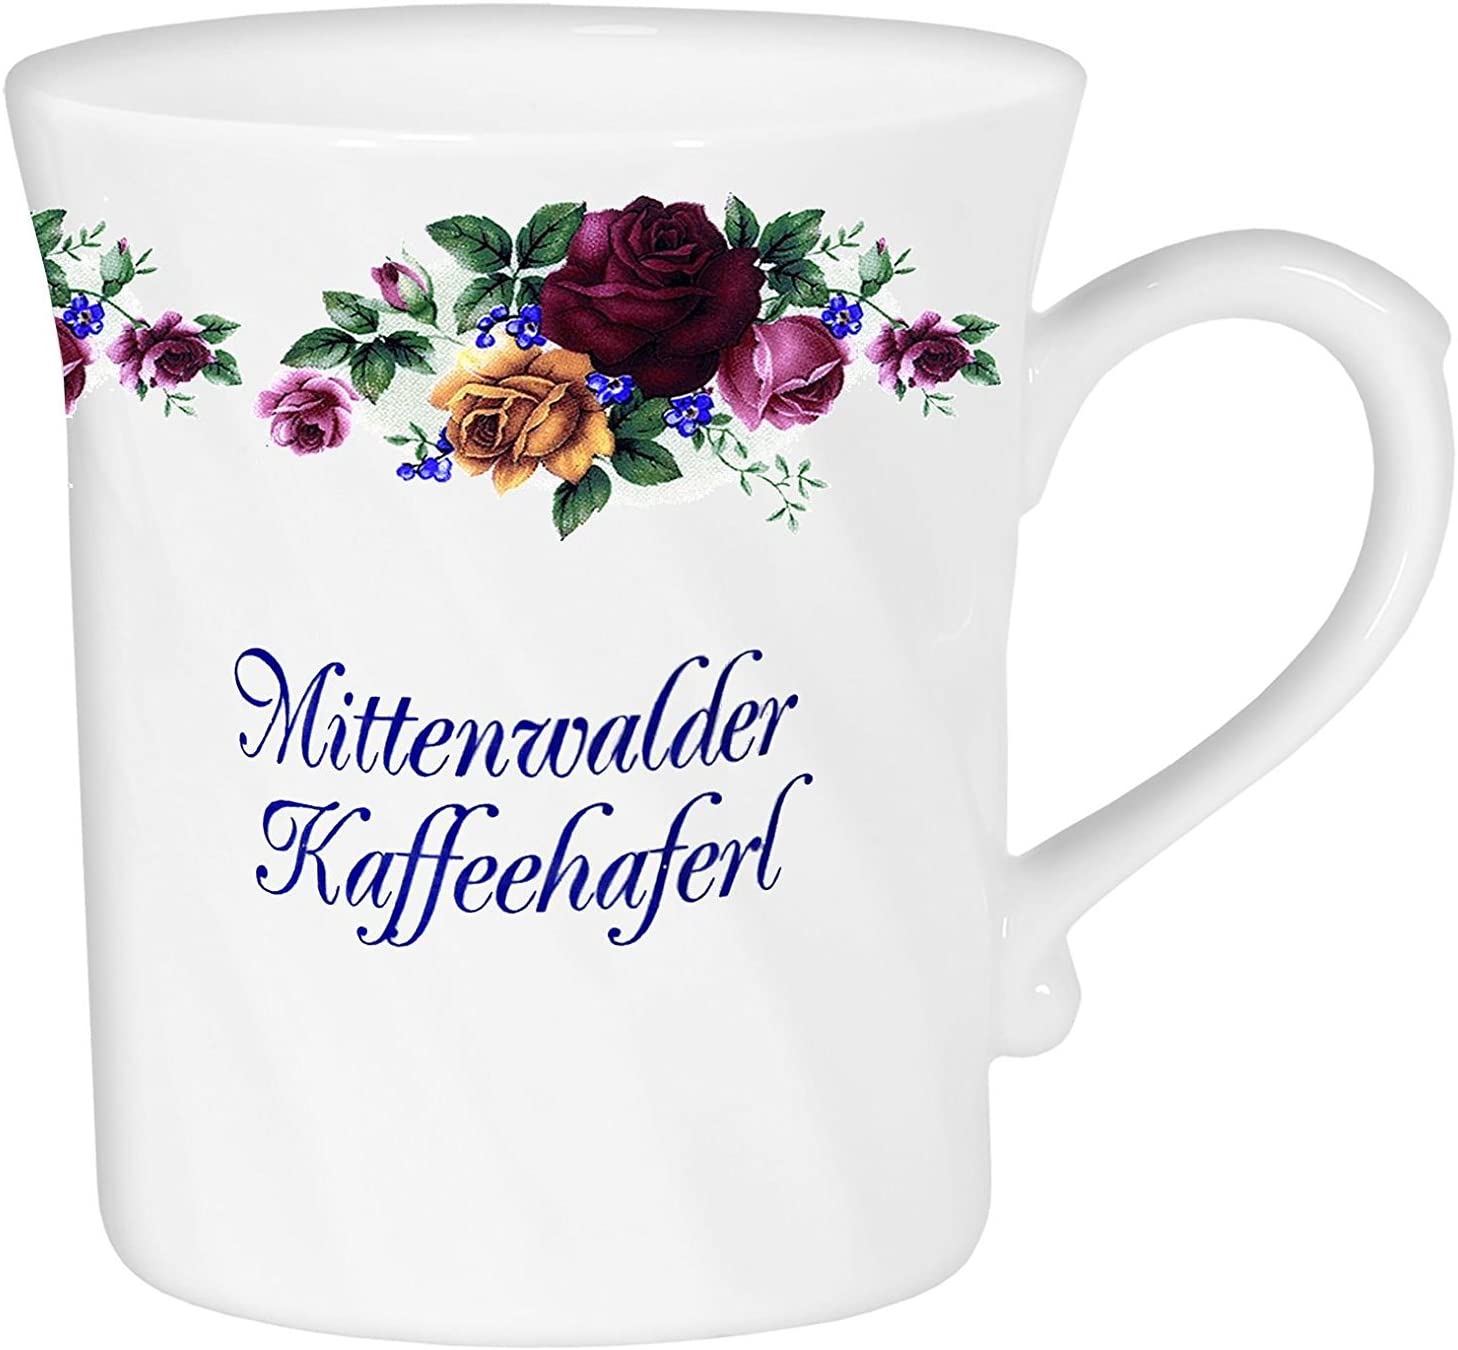 Porzellan gedreht- Tasse, Kaffeepott, Becher - Mittenwald - Rosenranke